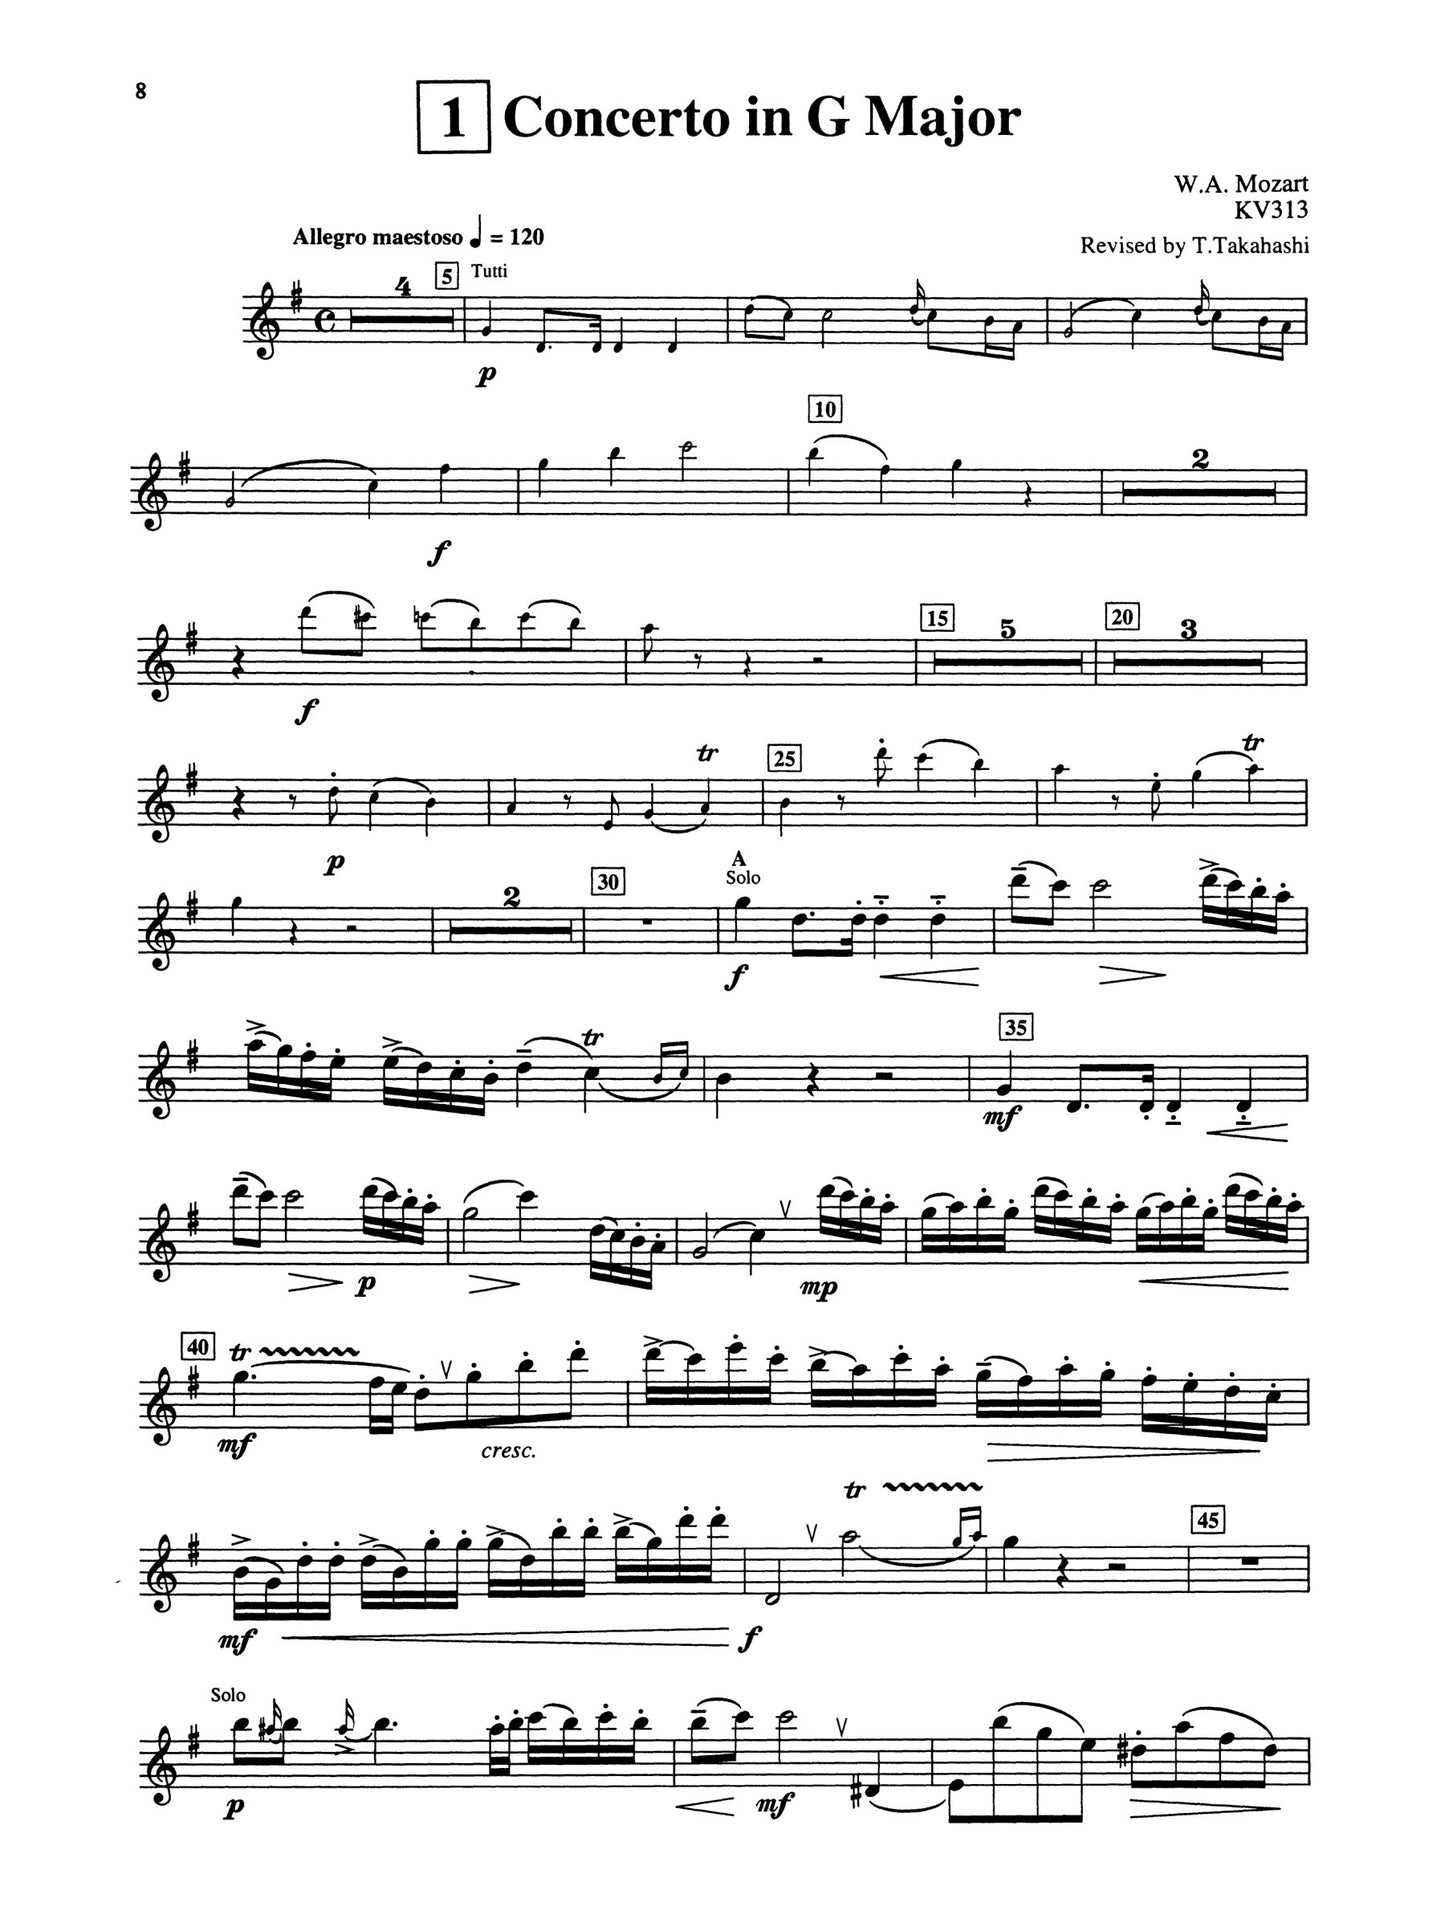 Suzuki Flute School - Volume 11 Flute Part Book